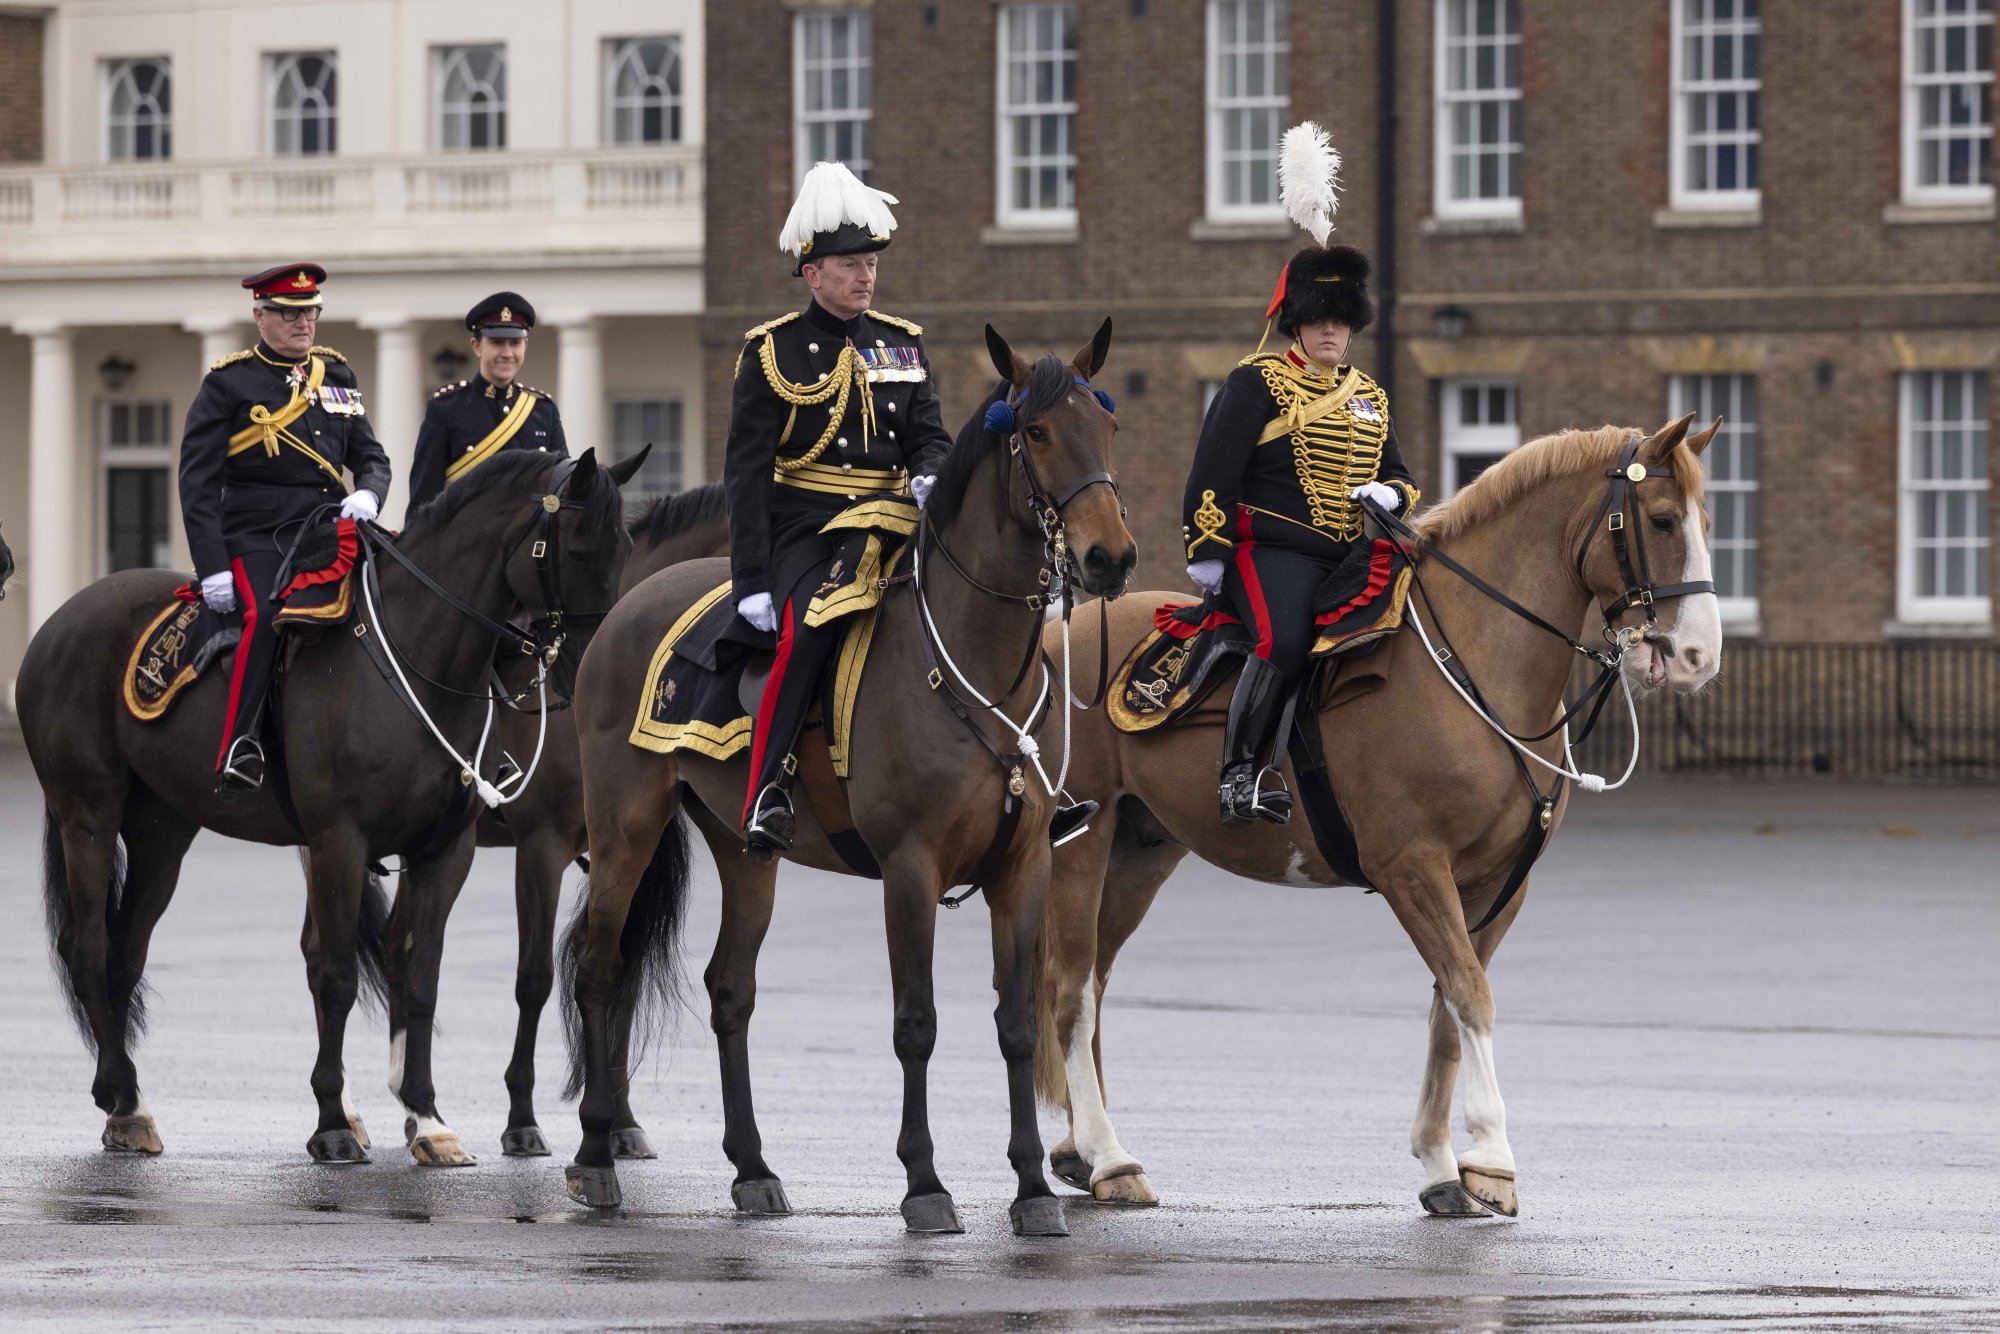 Μεγάλη Βρετανία: Η βασιλική οικογένεια ψάχνει υπάλληλο για να φροντίζει τα άλογα – Το «παράδοξο» με τον μισθό